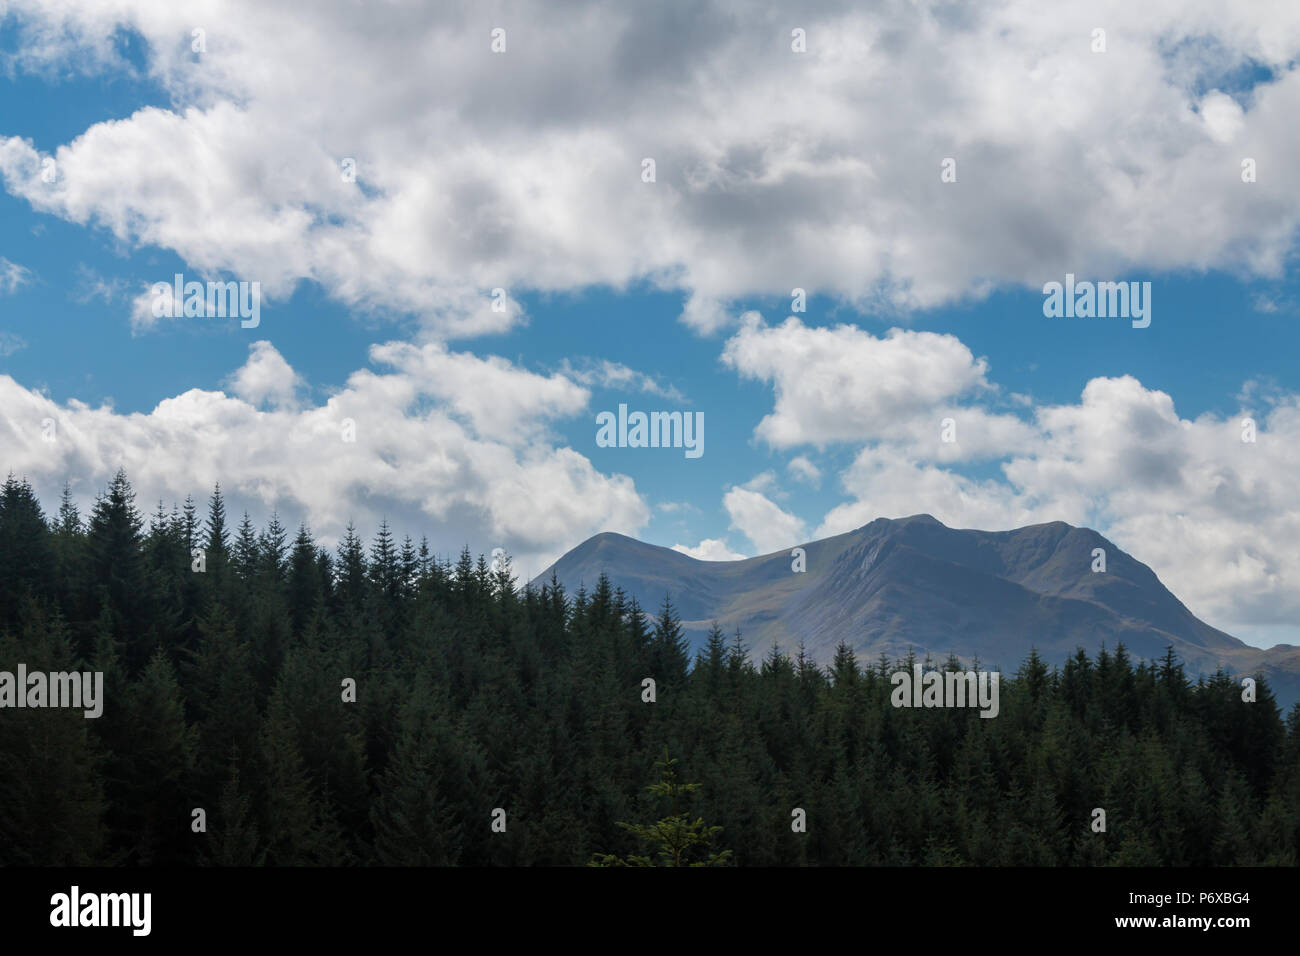 Una catena montuosa sorge su un pinnipo in primo piano, con cielo blu e nuvola che comprende i due terzi superiori dell'immagine. Foto Stock